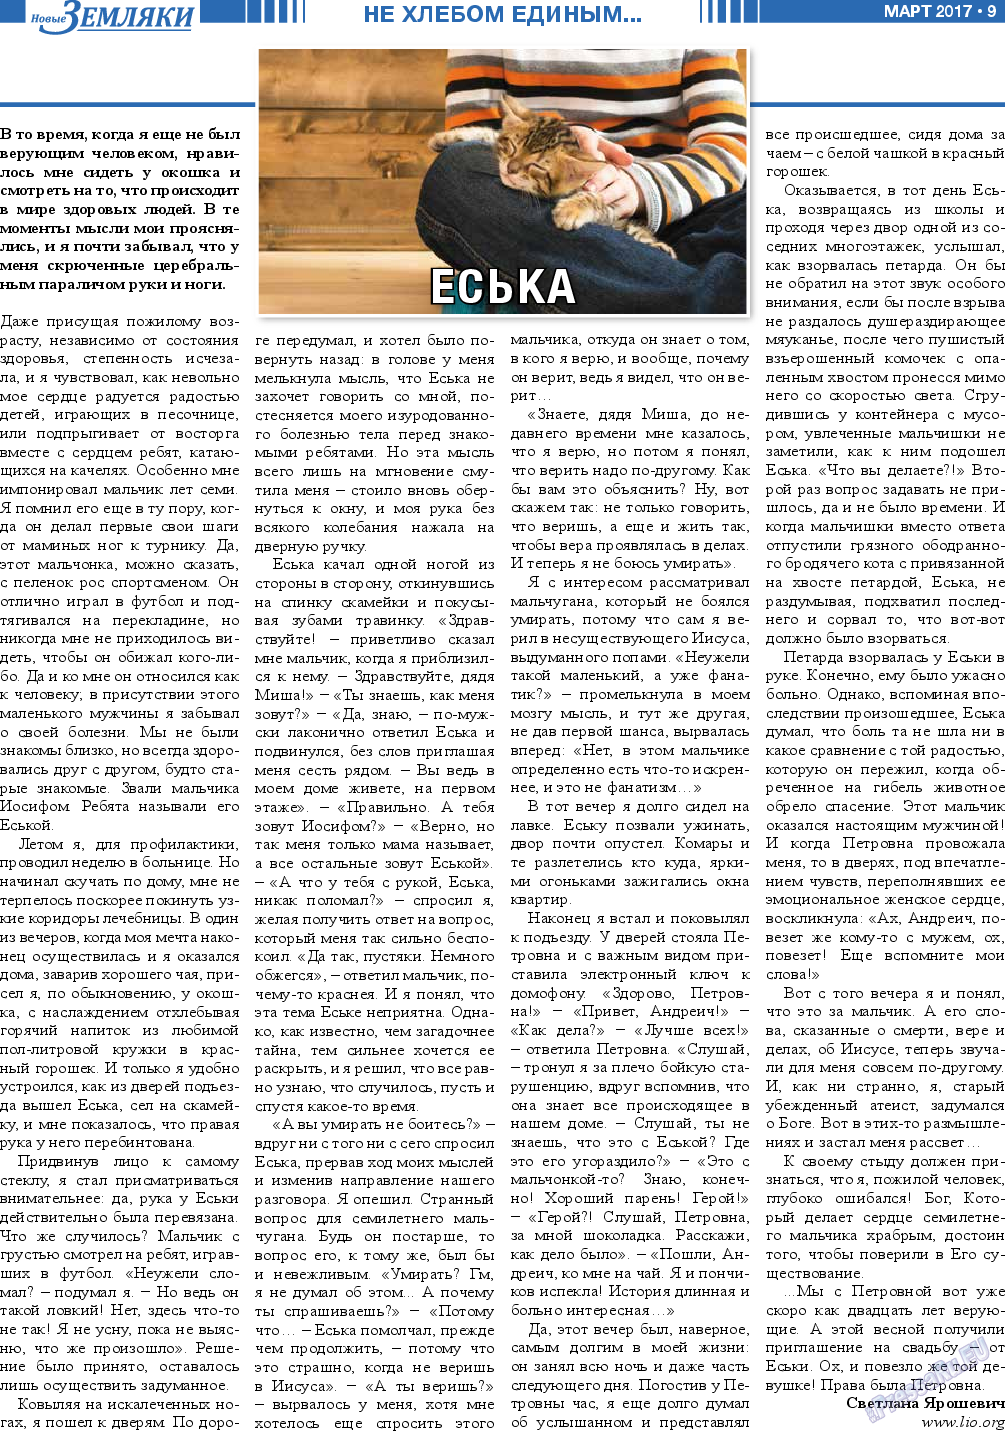 Новые Земляки, газета. 2017 №3 стр.9